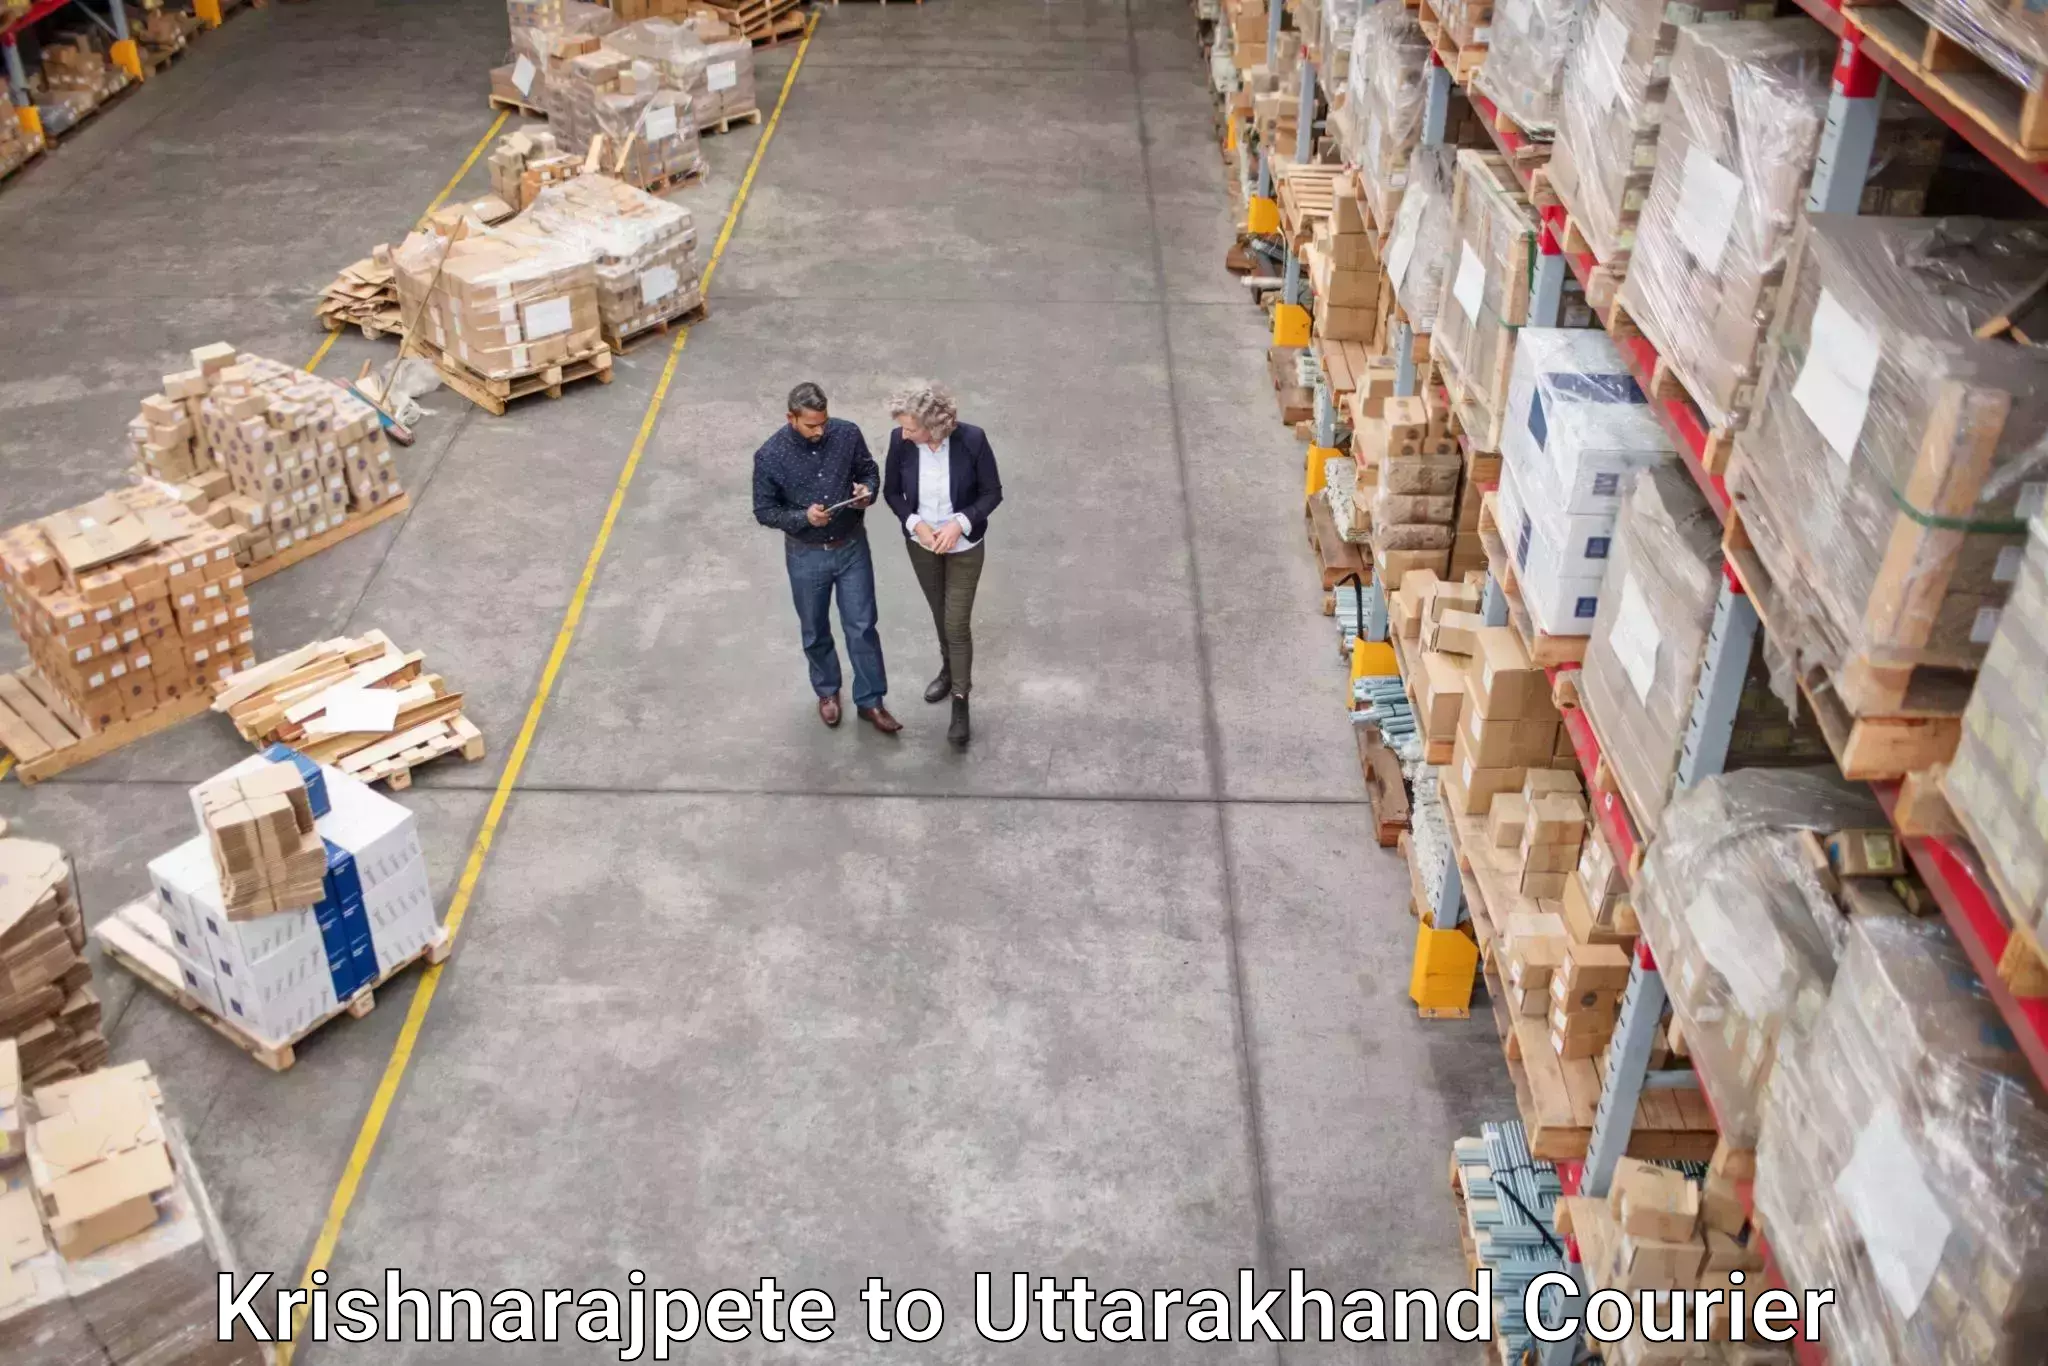 Logistics service provider Krishnarajpete to Uttarakhand